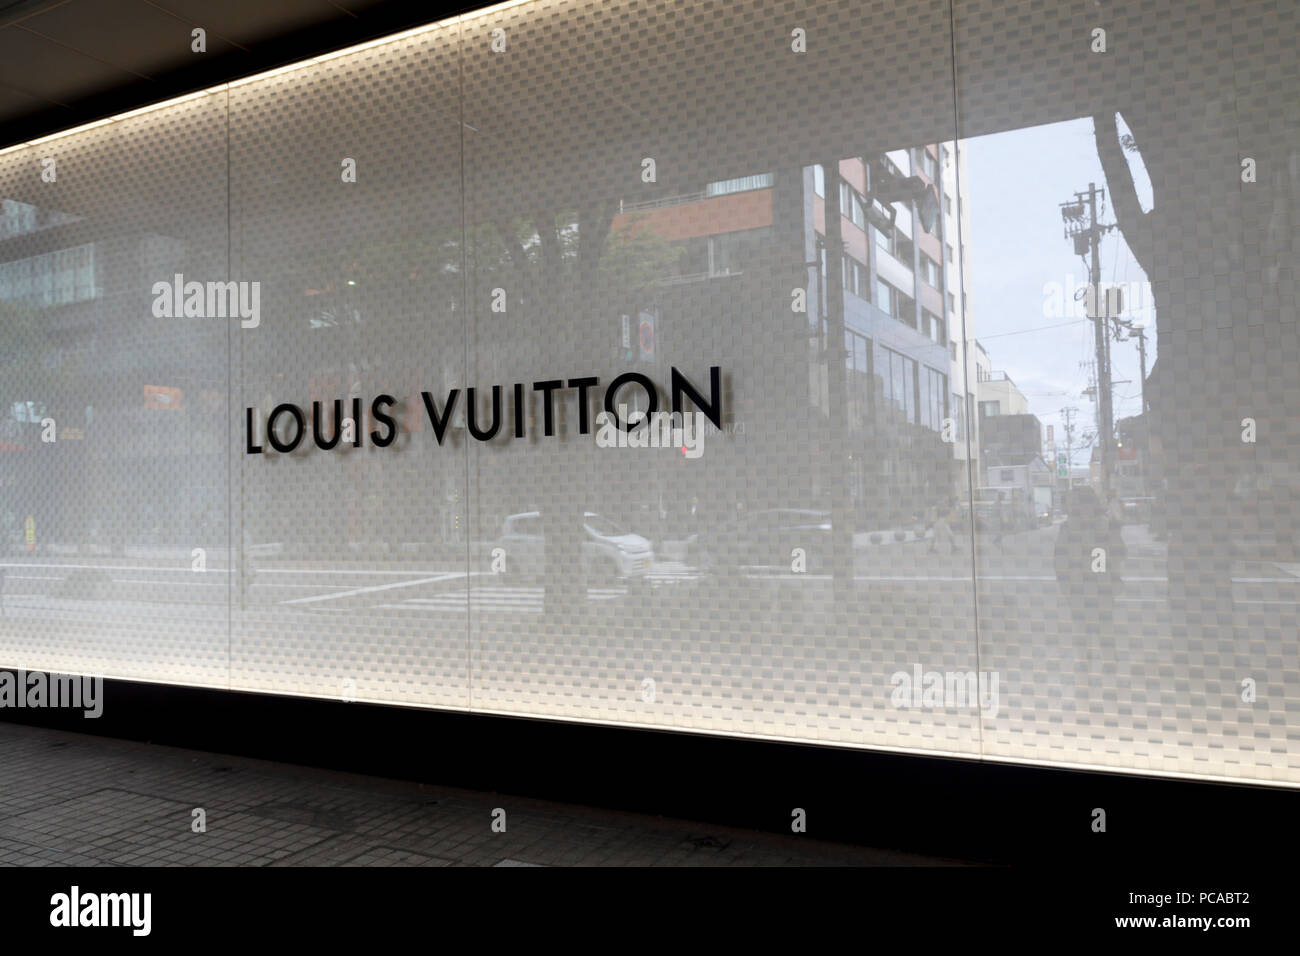 Louis vuitton store  Retail facade, Facade architecture